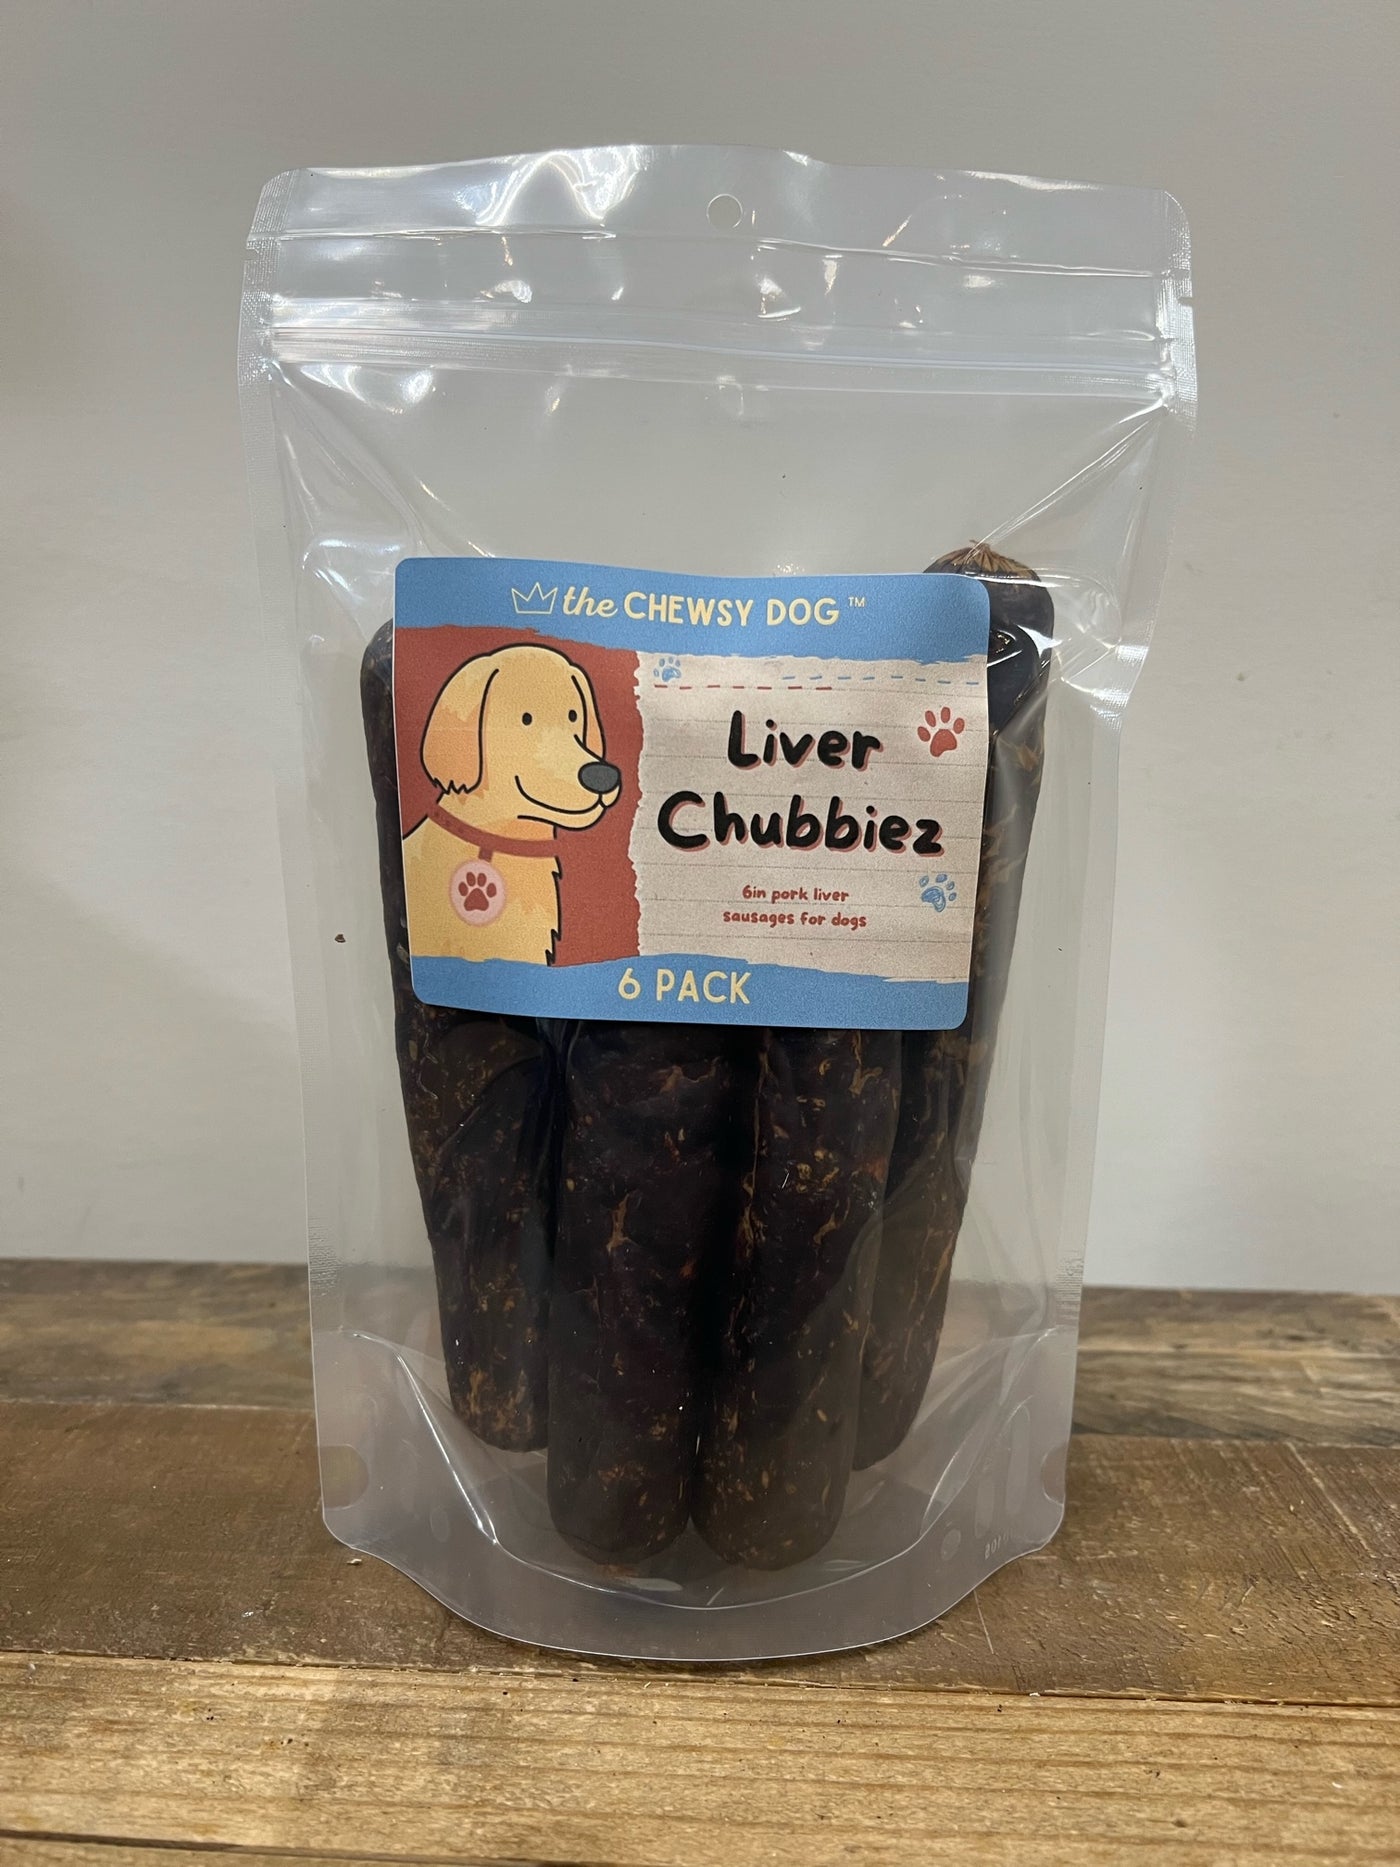 The Chewsy Dog Liver Chubbiez